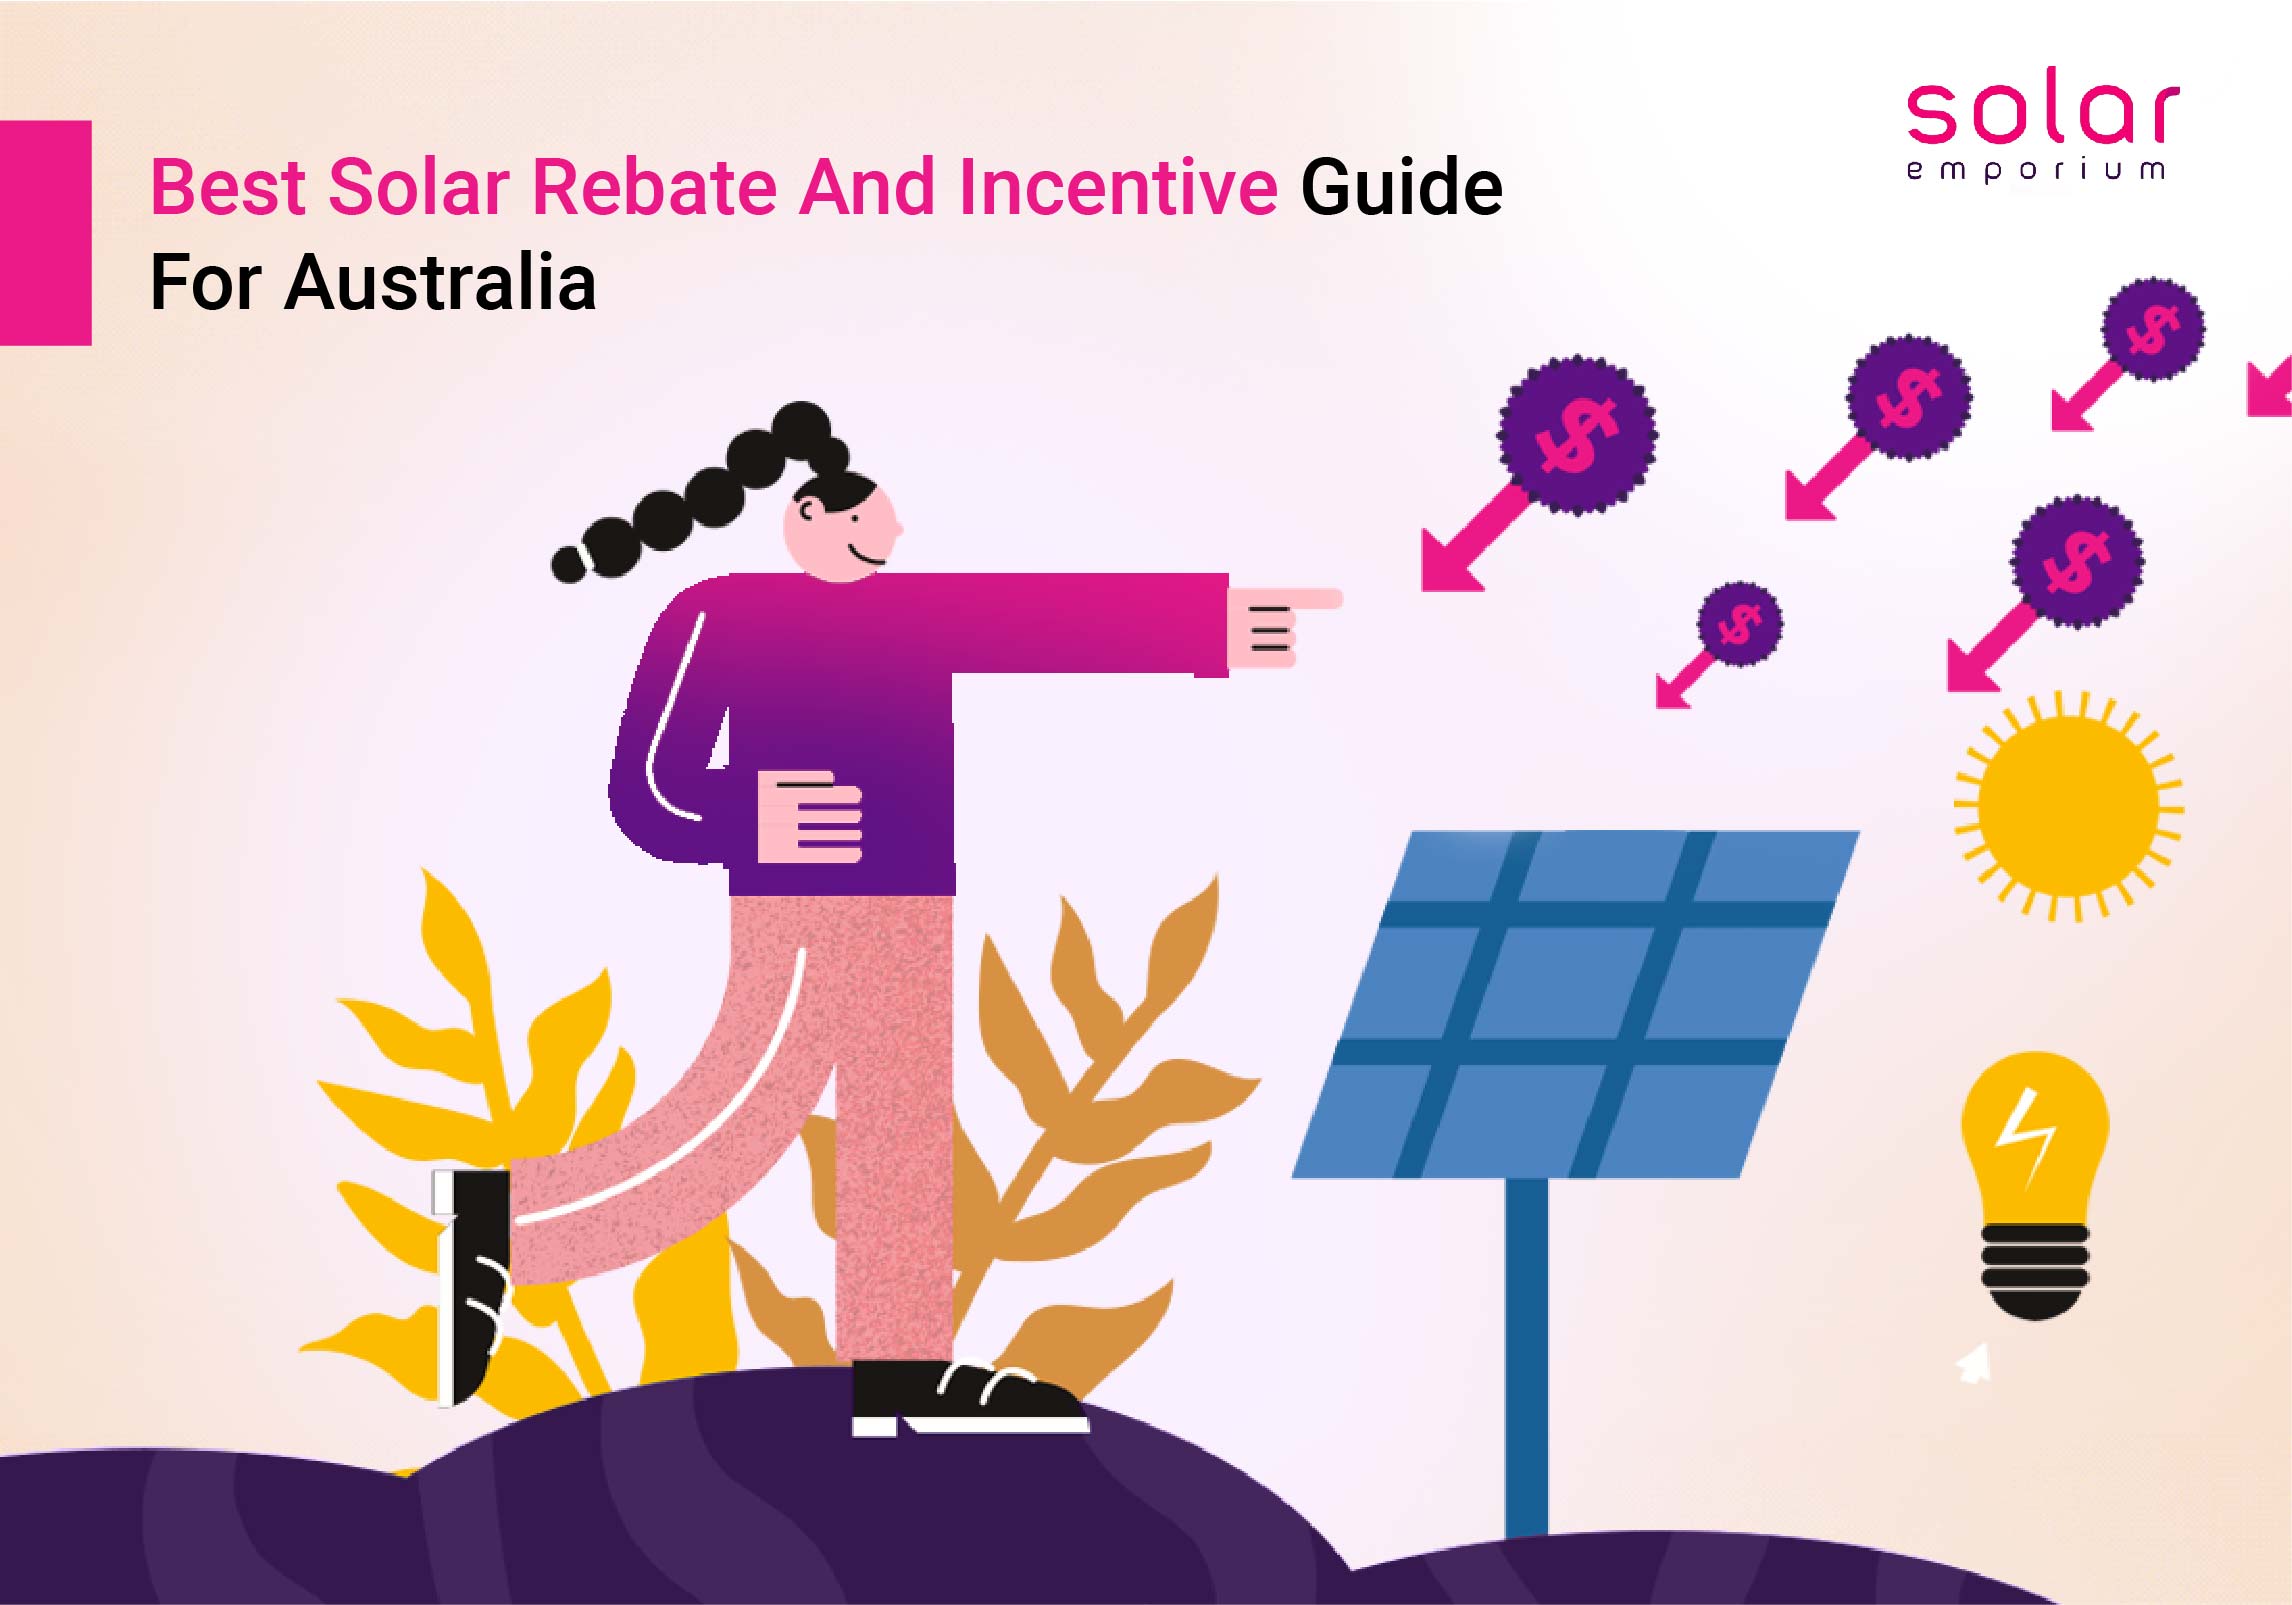 Best Solar Rebate And Incentive Guide For Australia Solar Emporium